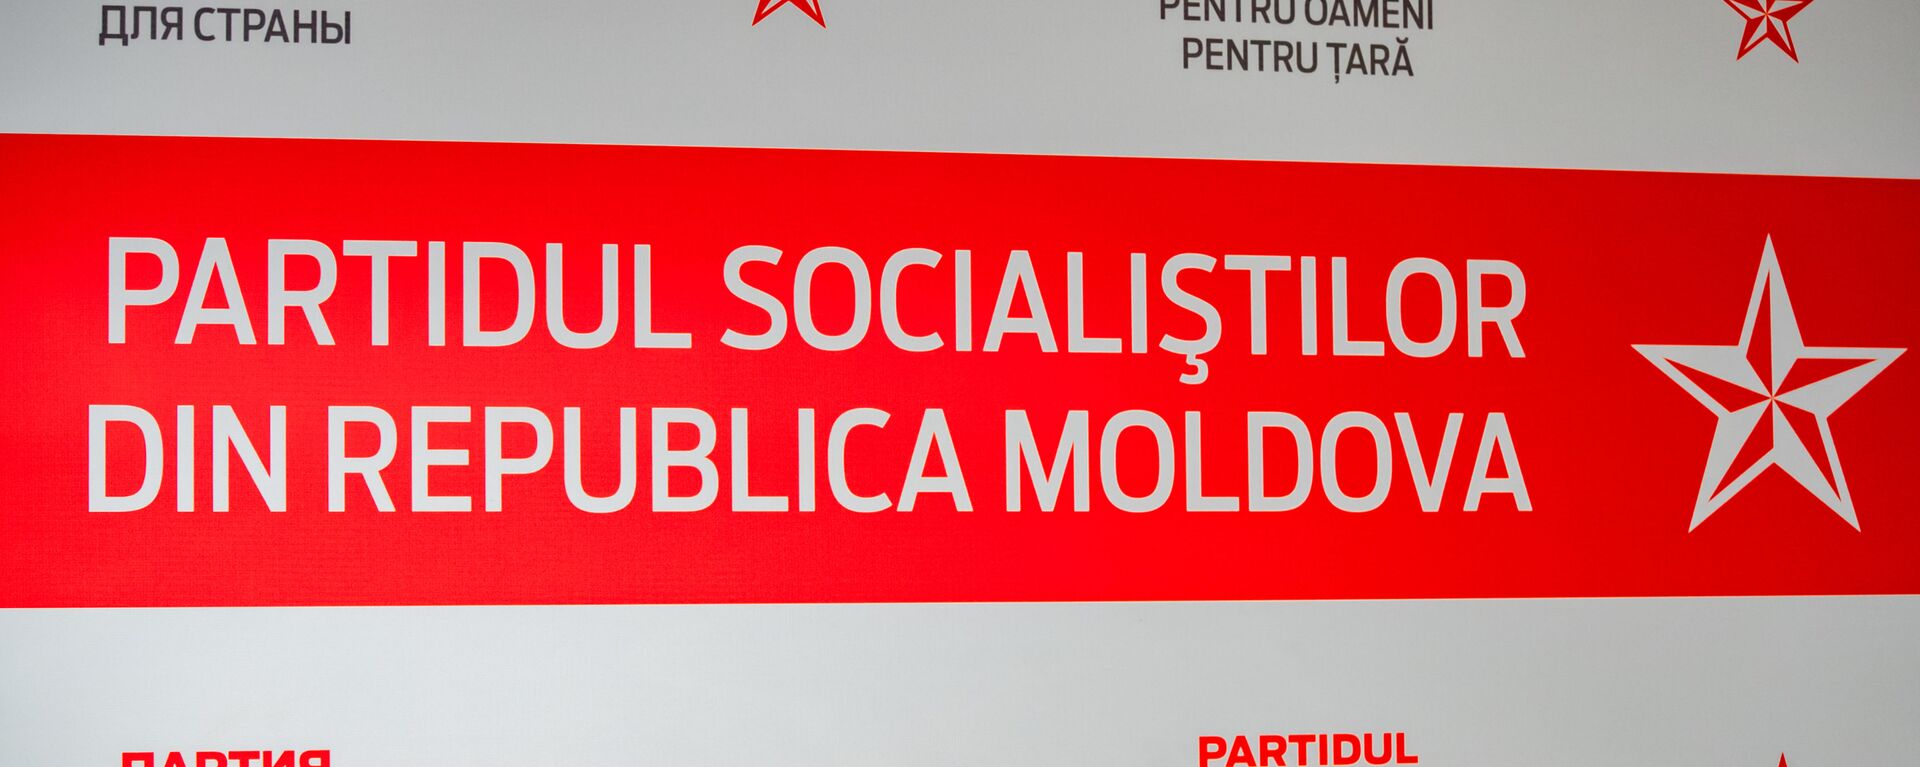 Partidul Socialiștilor din Republica Moldova - Sputnik Moldova, 1920, 19.08.2021